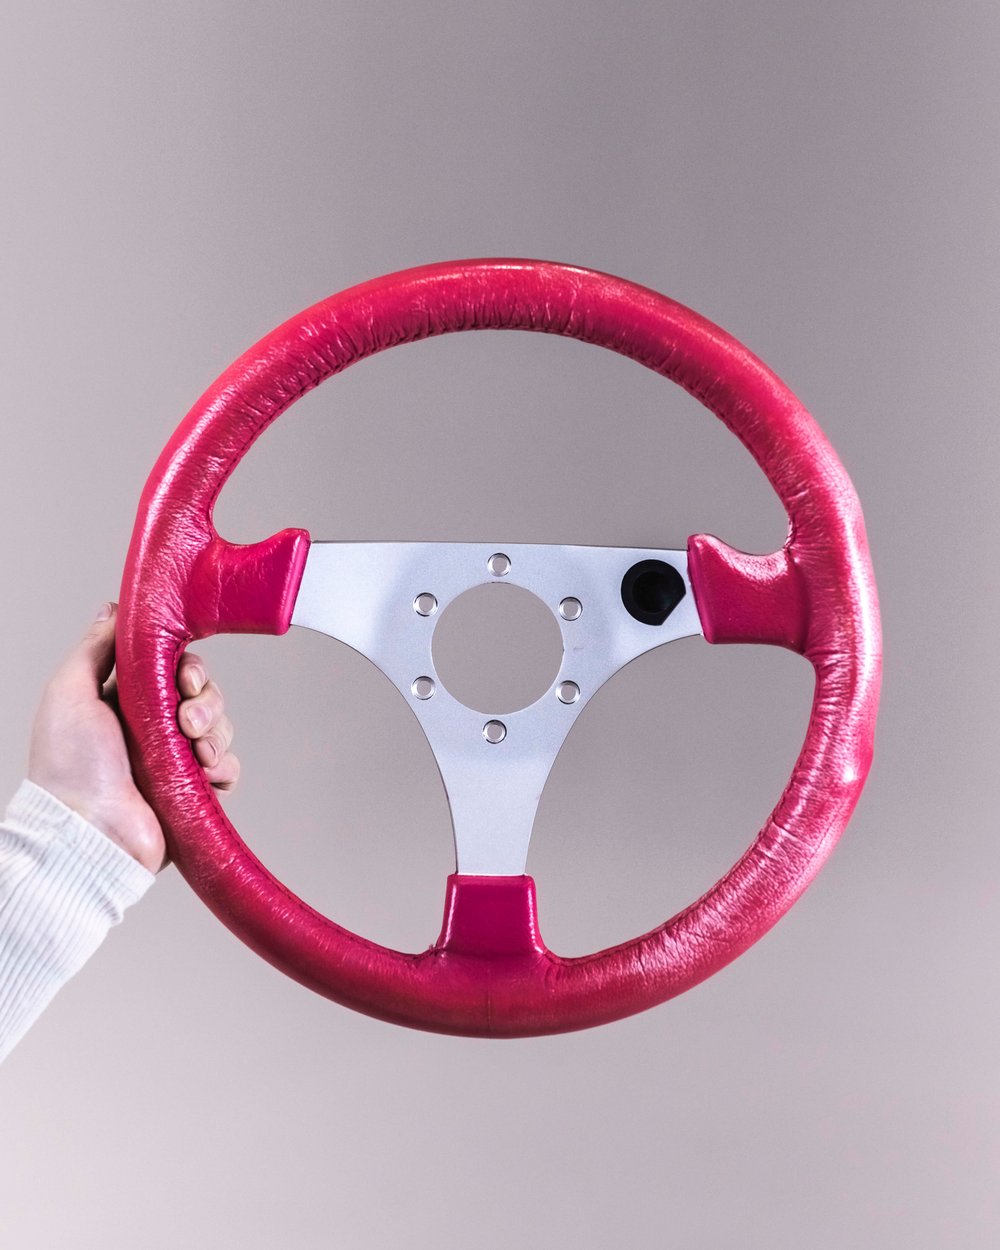 Indy 500 Steering Wheel (315mm)